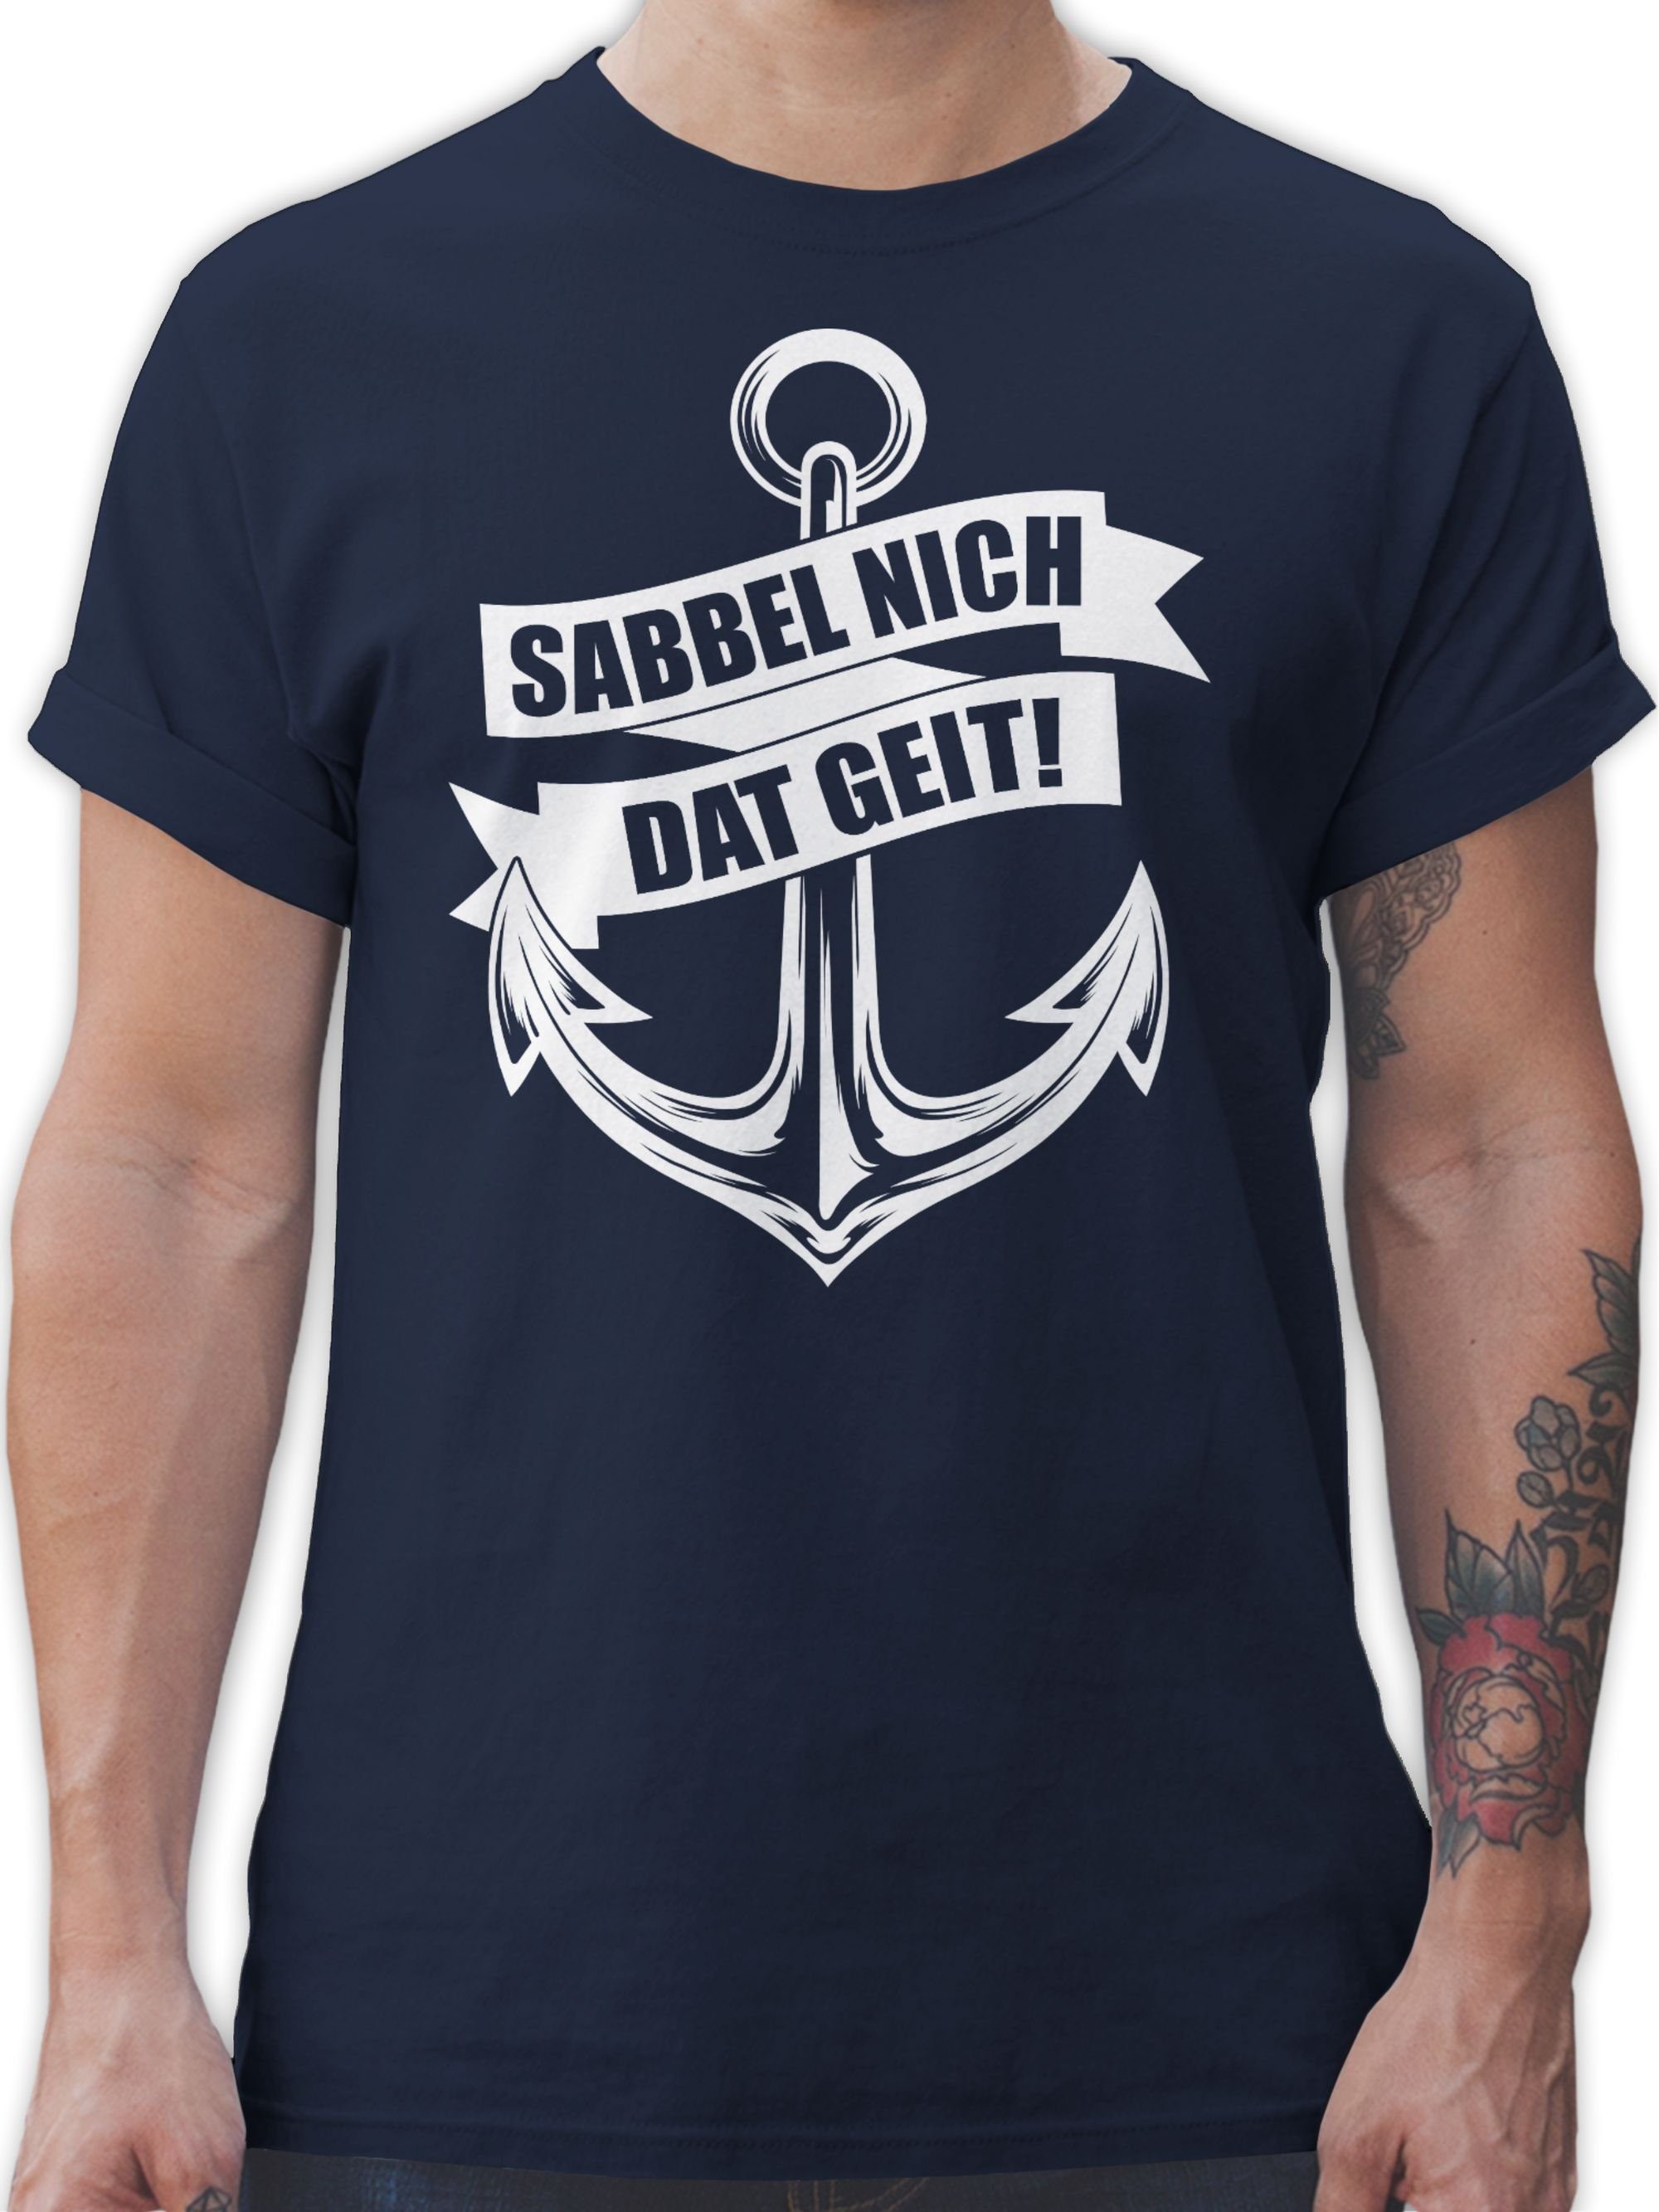 Shirtracer T-Shirt Sabbel nich dat geit! - weiß Sprüche Statement 02 Navy Blau